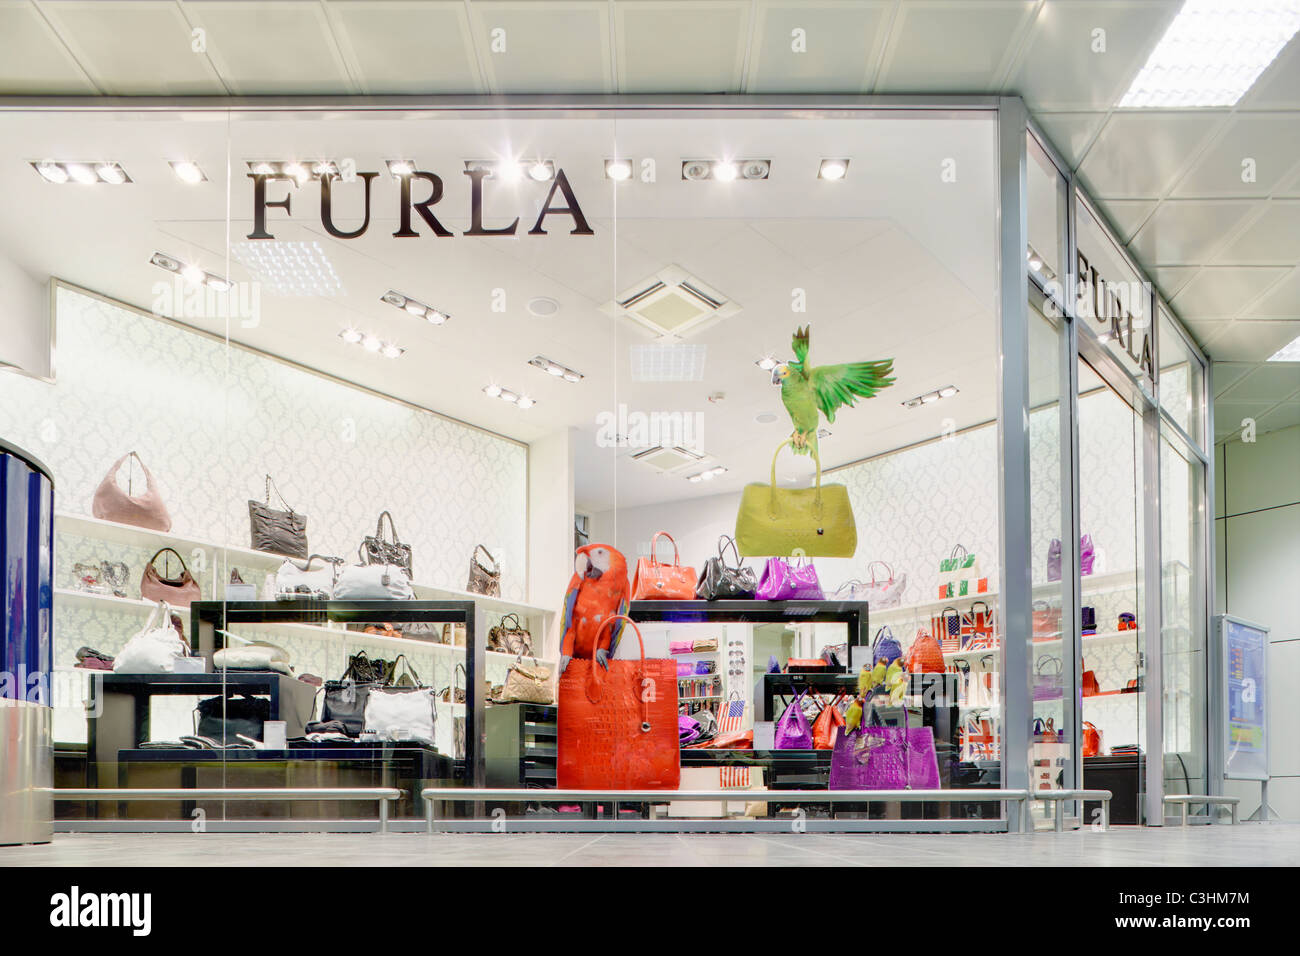 Sacs à main de luxe boutique marque Furla store dans le centre commercial terminal des départs à l'aéroport Guglielmo Marconi de Bologne Italie Banque D'Images